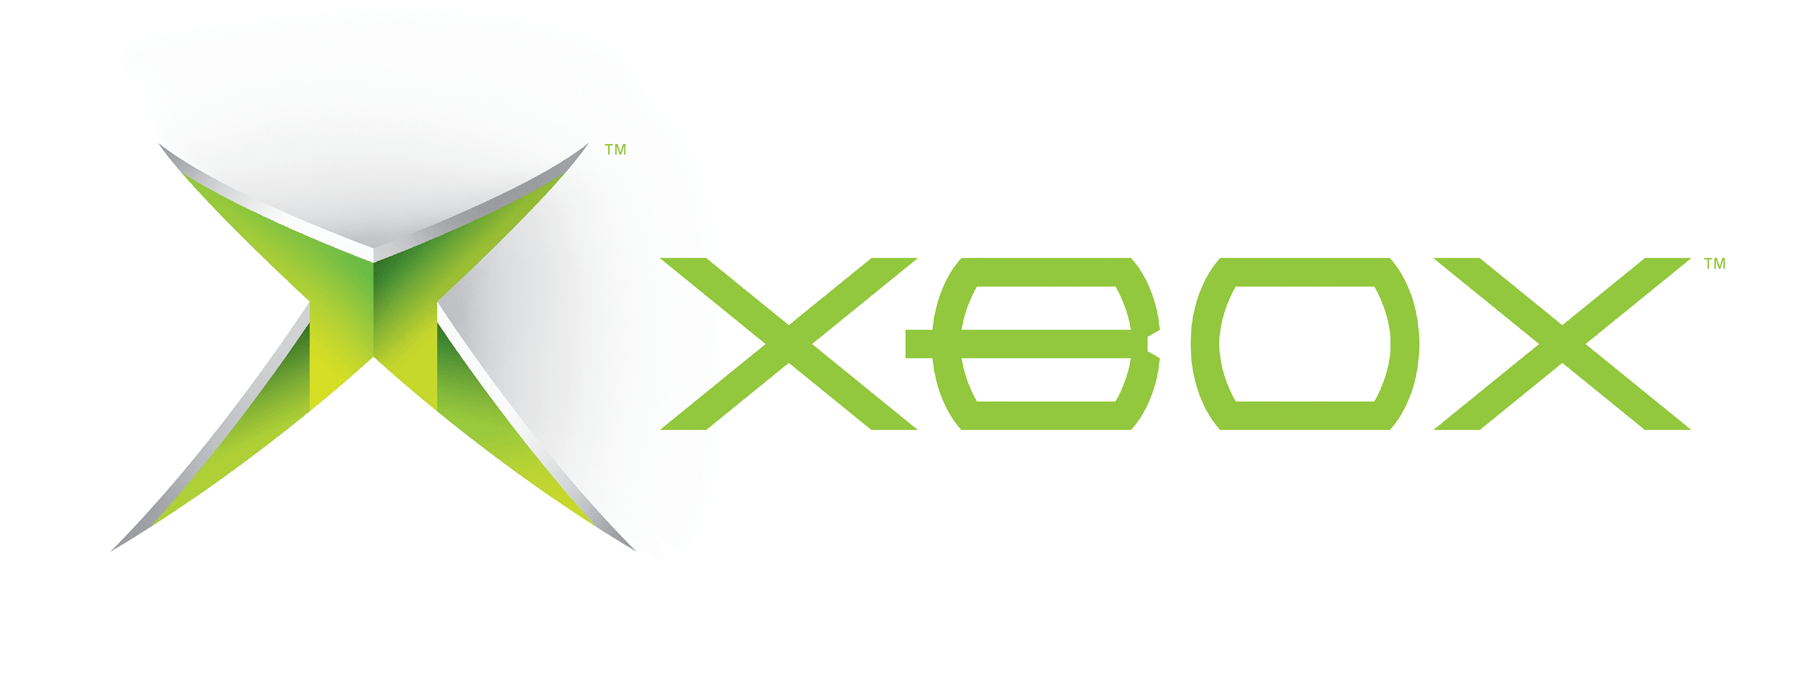 Xbox, i nomi che non sentirete mai (per fortuna)